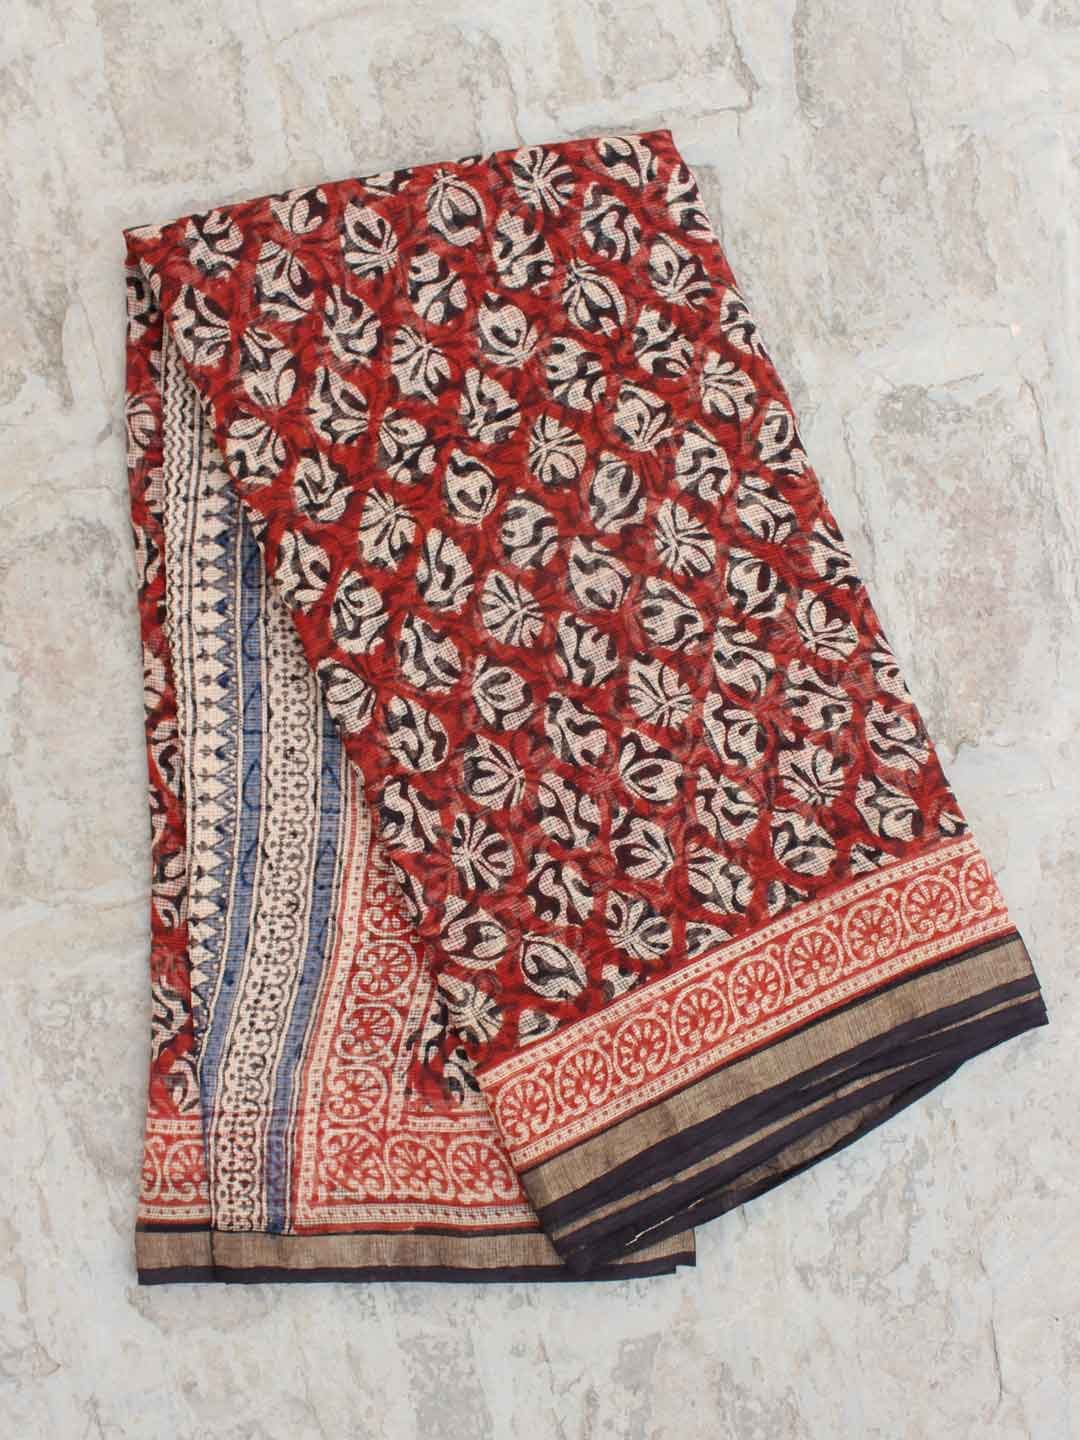 kota cotton sarees with zari checks(KCSZCS5) at Rs 1,000 / Piece in  Dindigul | Wholesale Deal Lakshmi